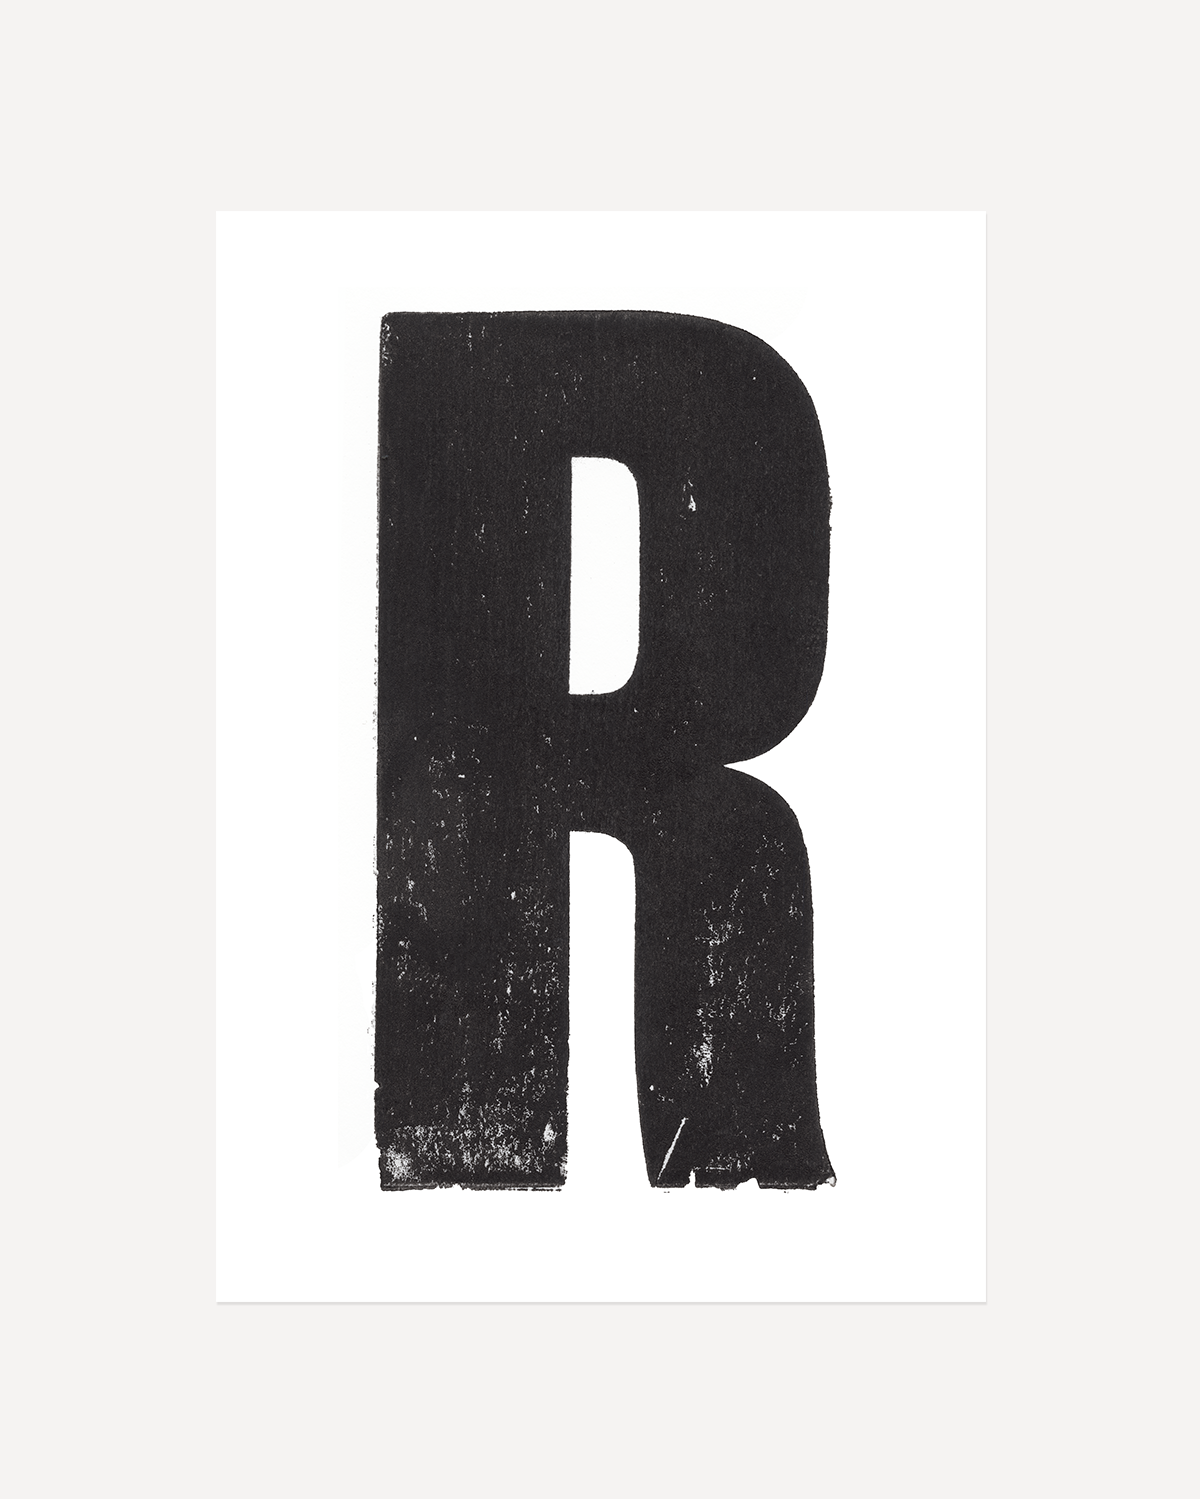 R - Letterpress Print in Black by The Rik Barwick Studio